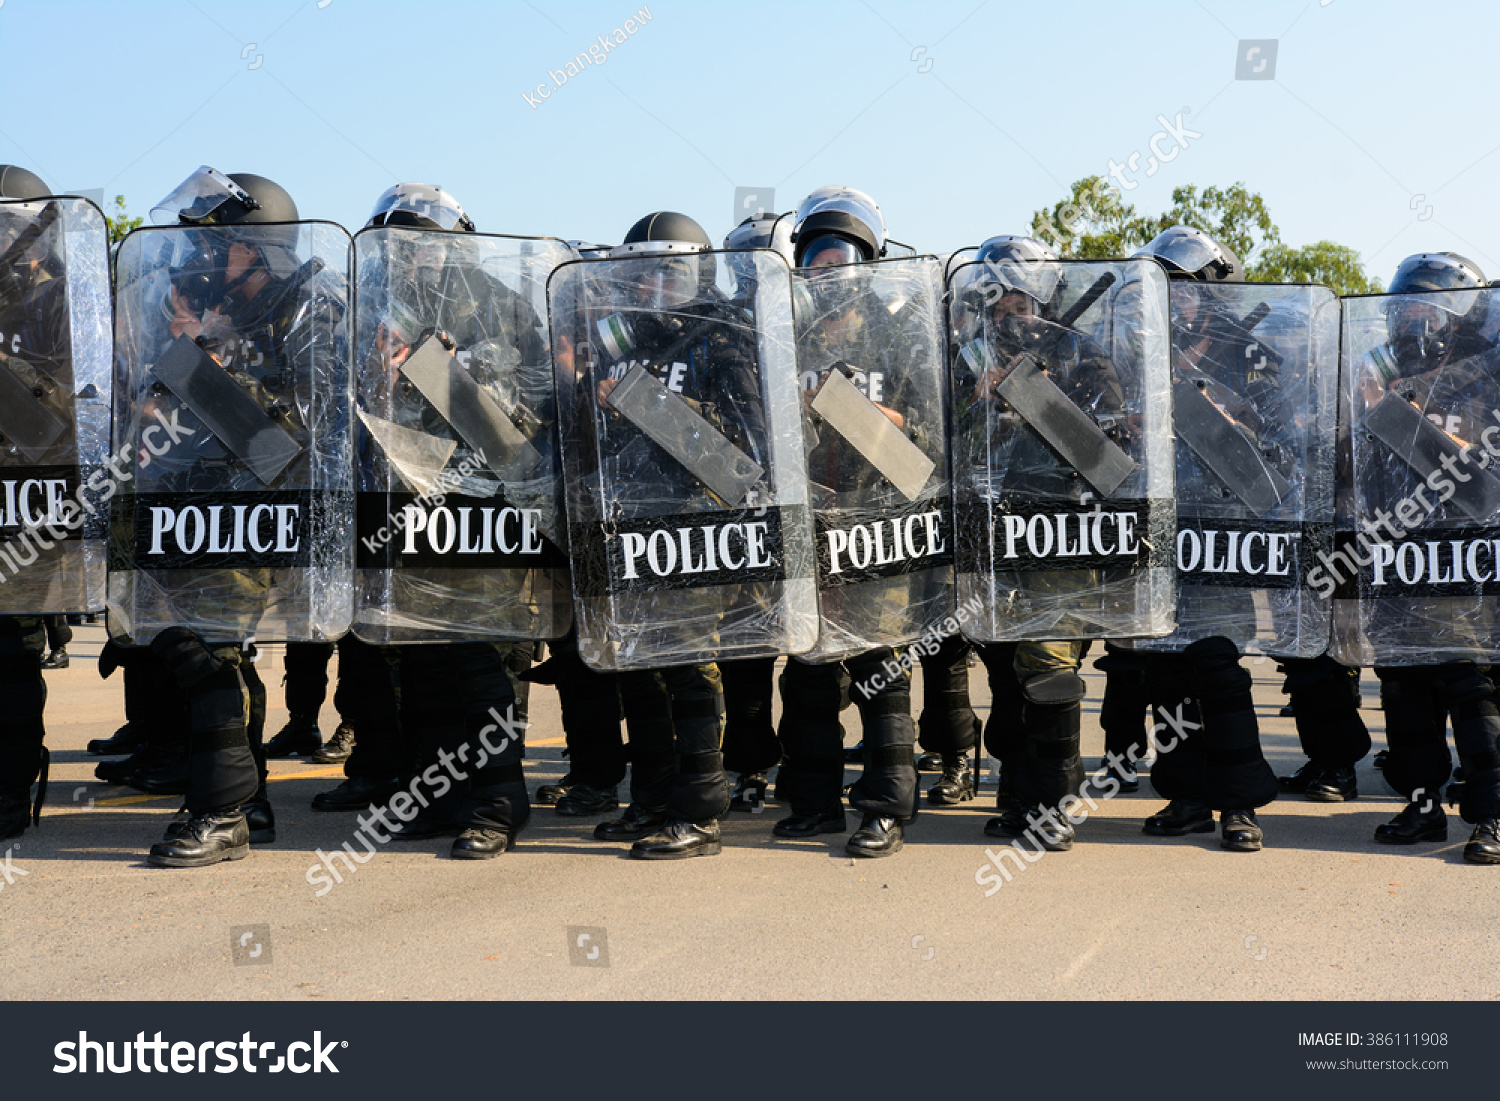 Riot police #386111908